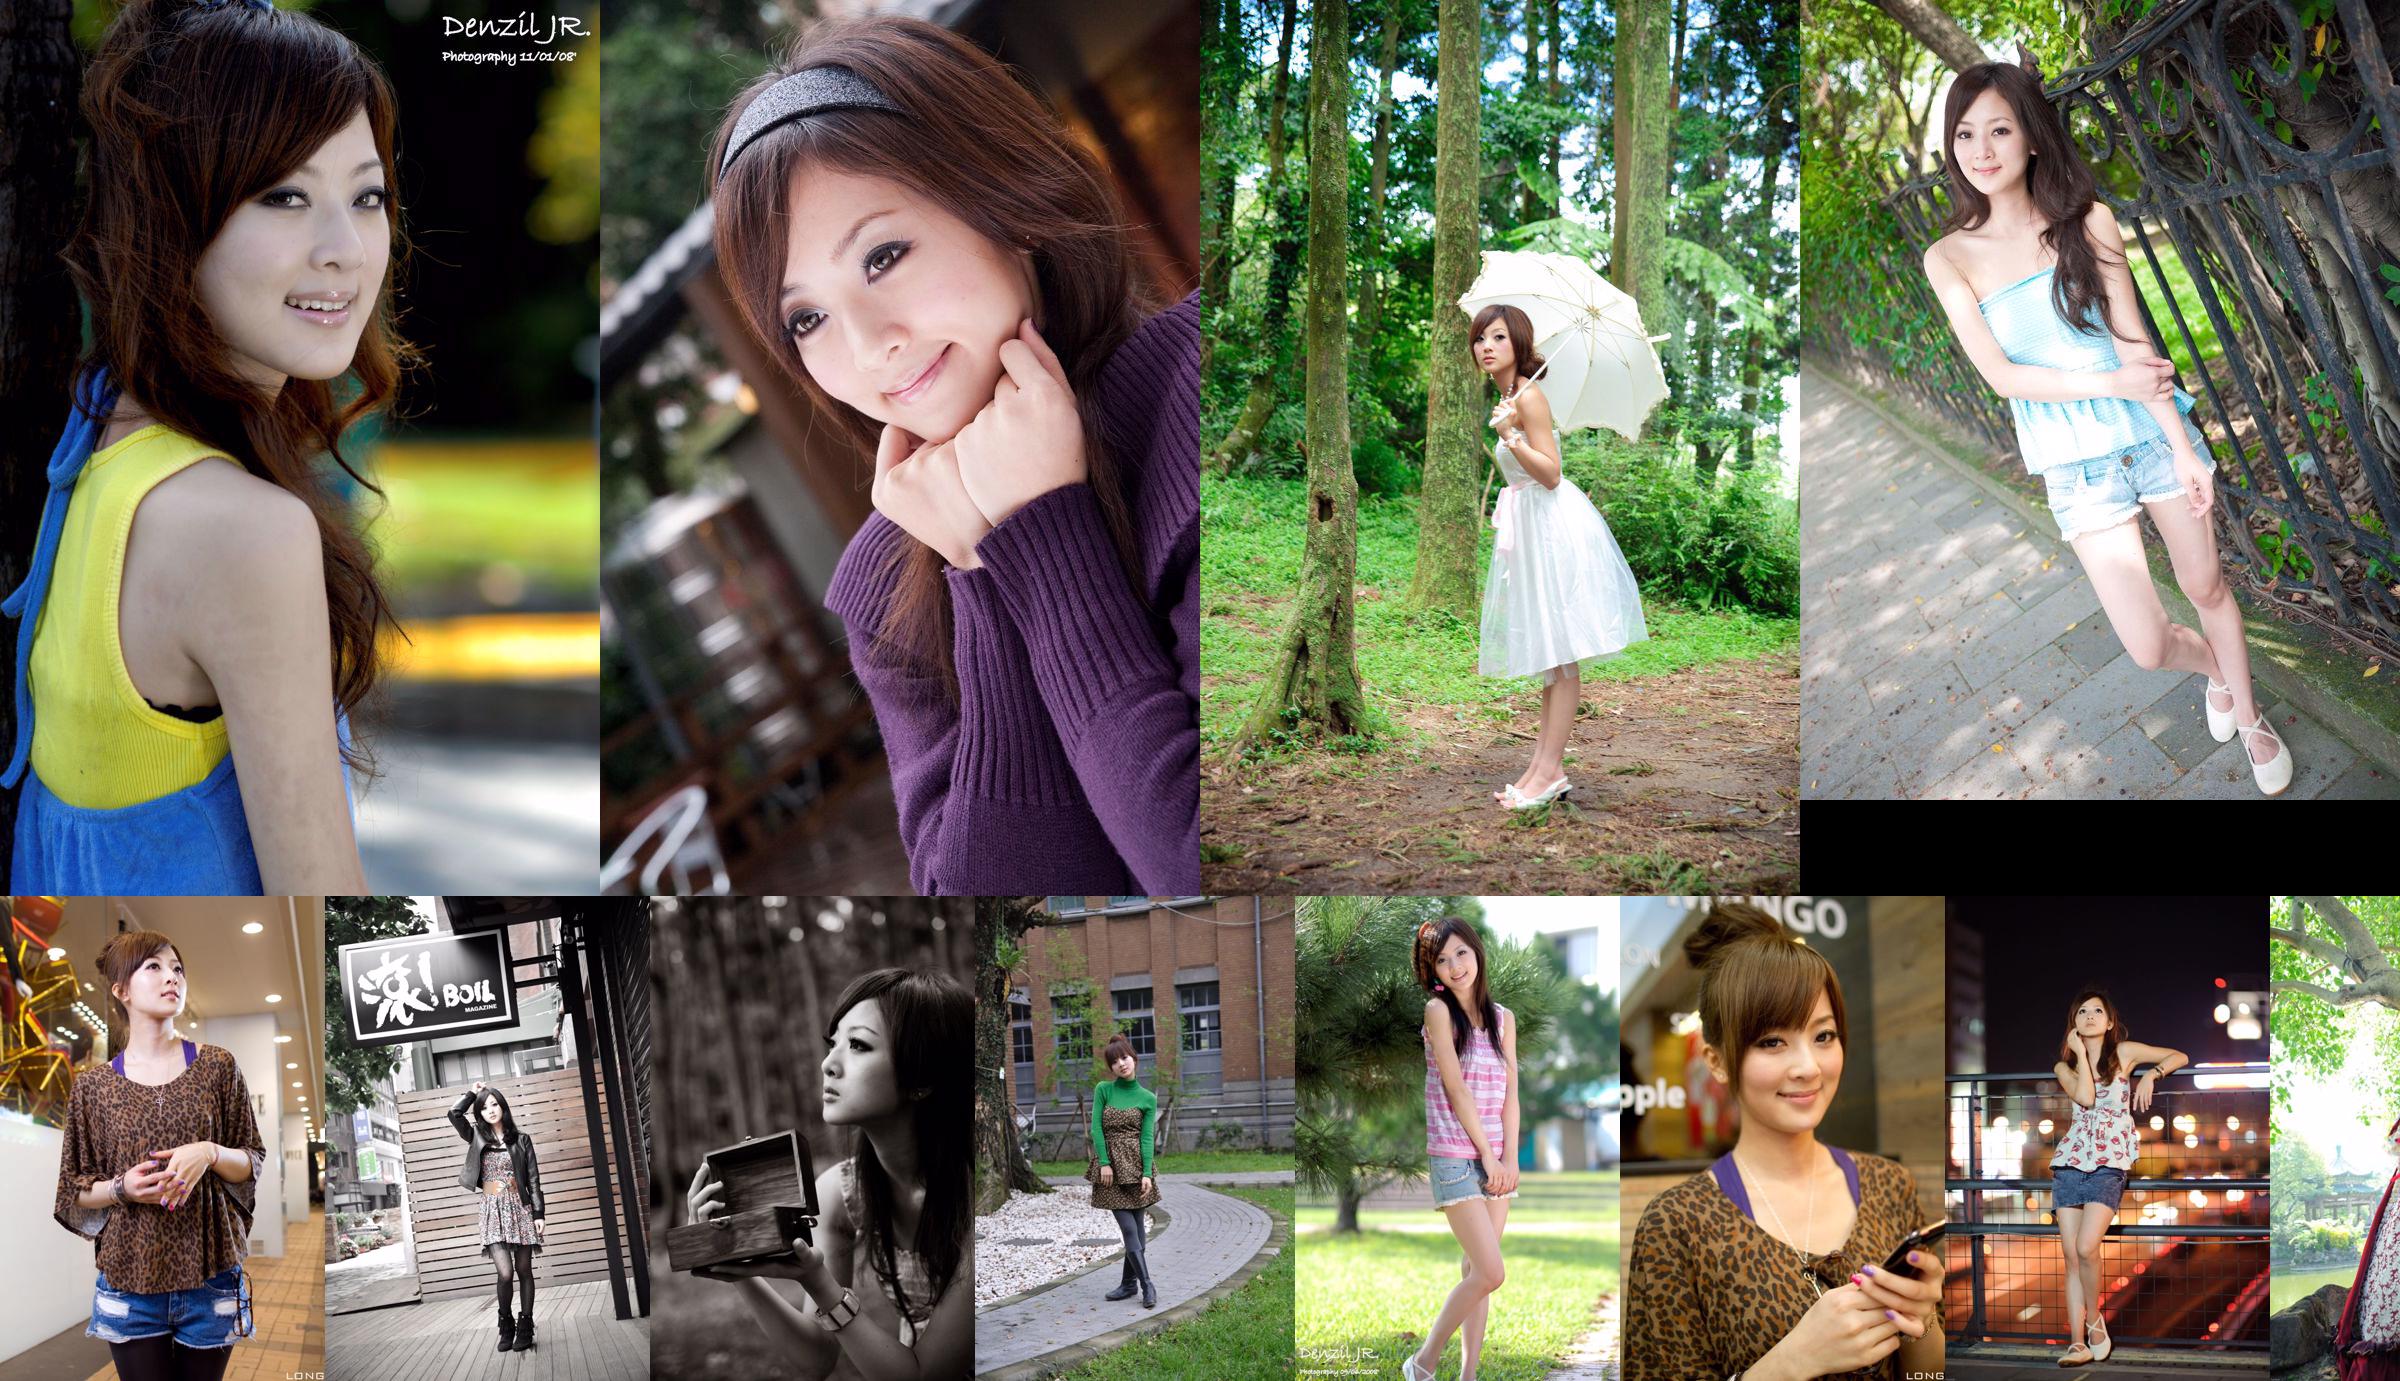 Mikako/Guoji MM "Shuangxi Park + Shilin Mansion" Part III No.28b61b Page 1